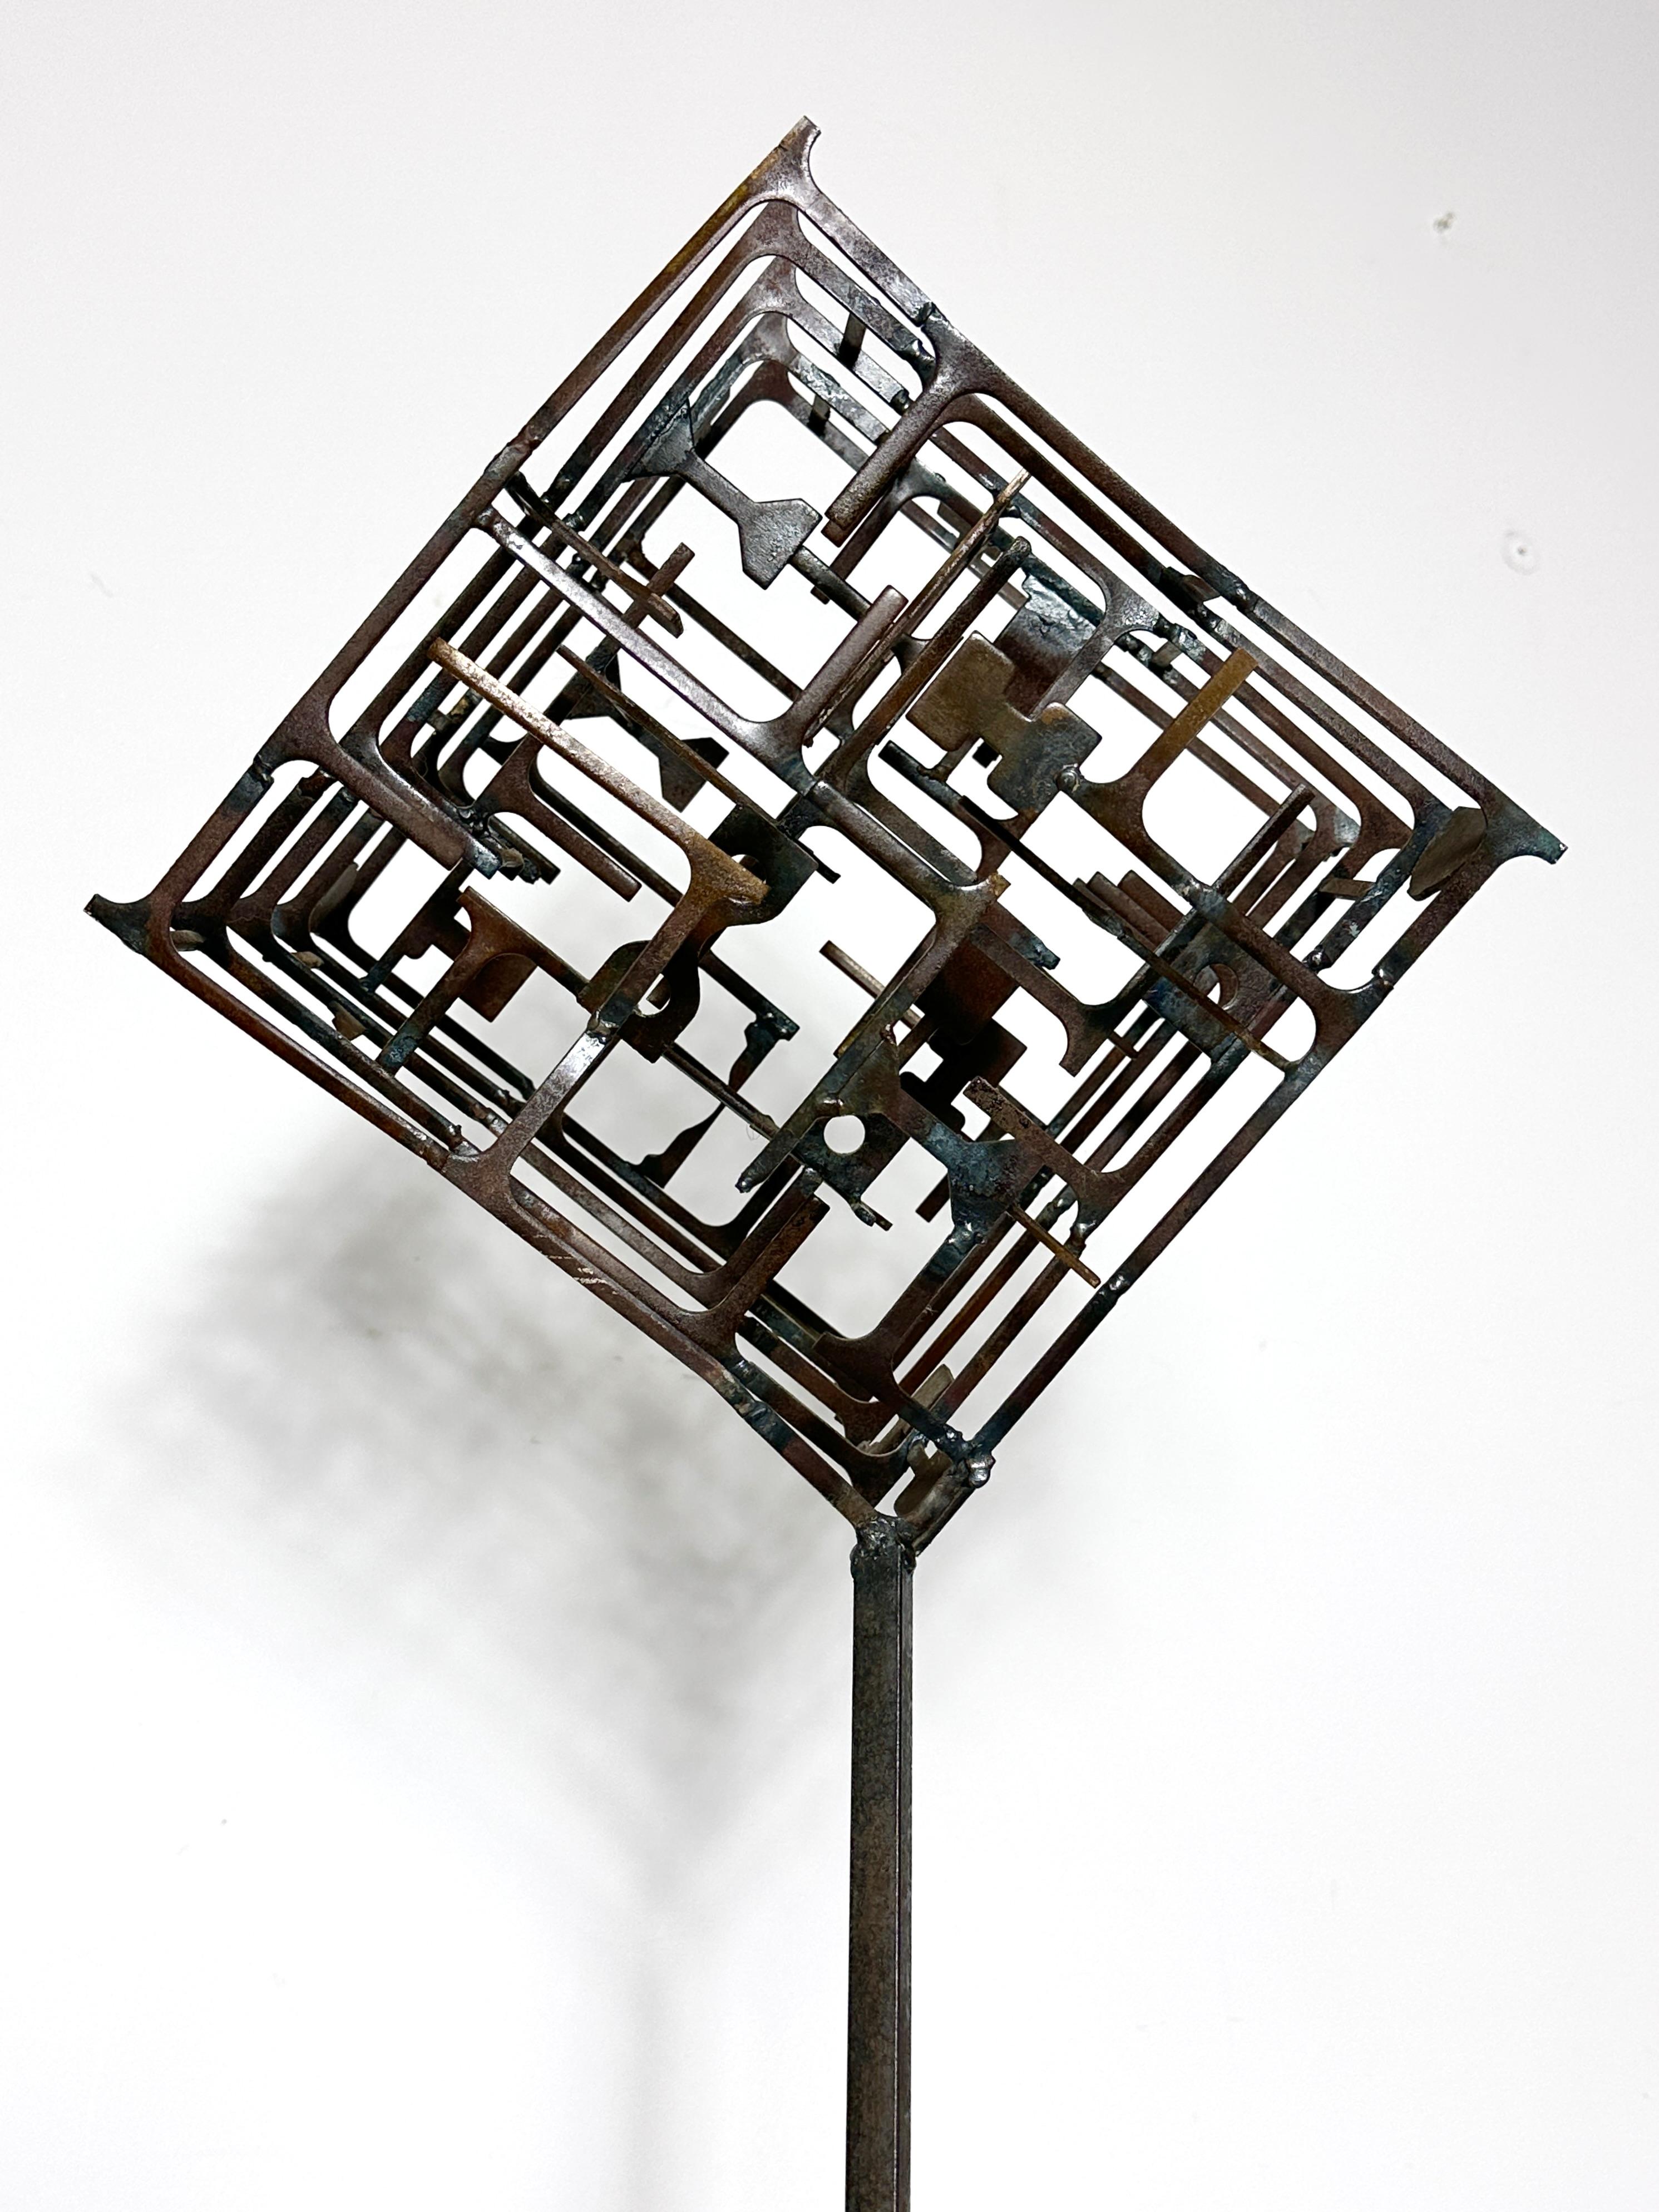 Sculpture abstraite de l'artiste Fred Scott, du nord de l'Ohio, vers les années 1960
Cube labyrinthe en acier soudé monté sur une base en bois et acrylique.
Acquise auprès de la succession de l'artiste, avec les étiquettes d'exposition originales à